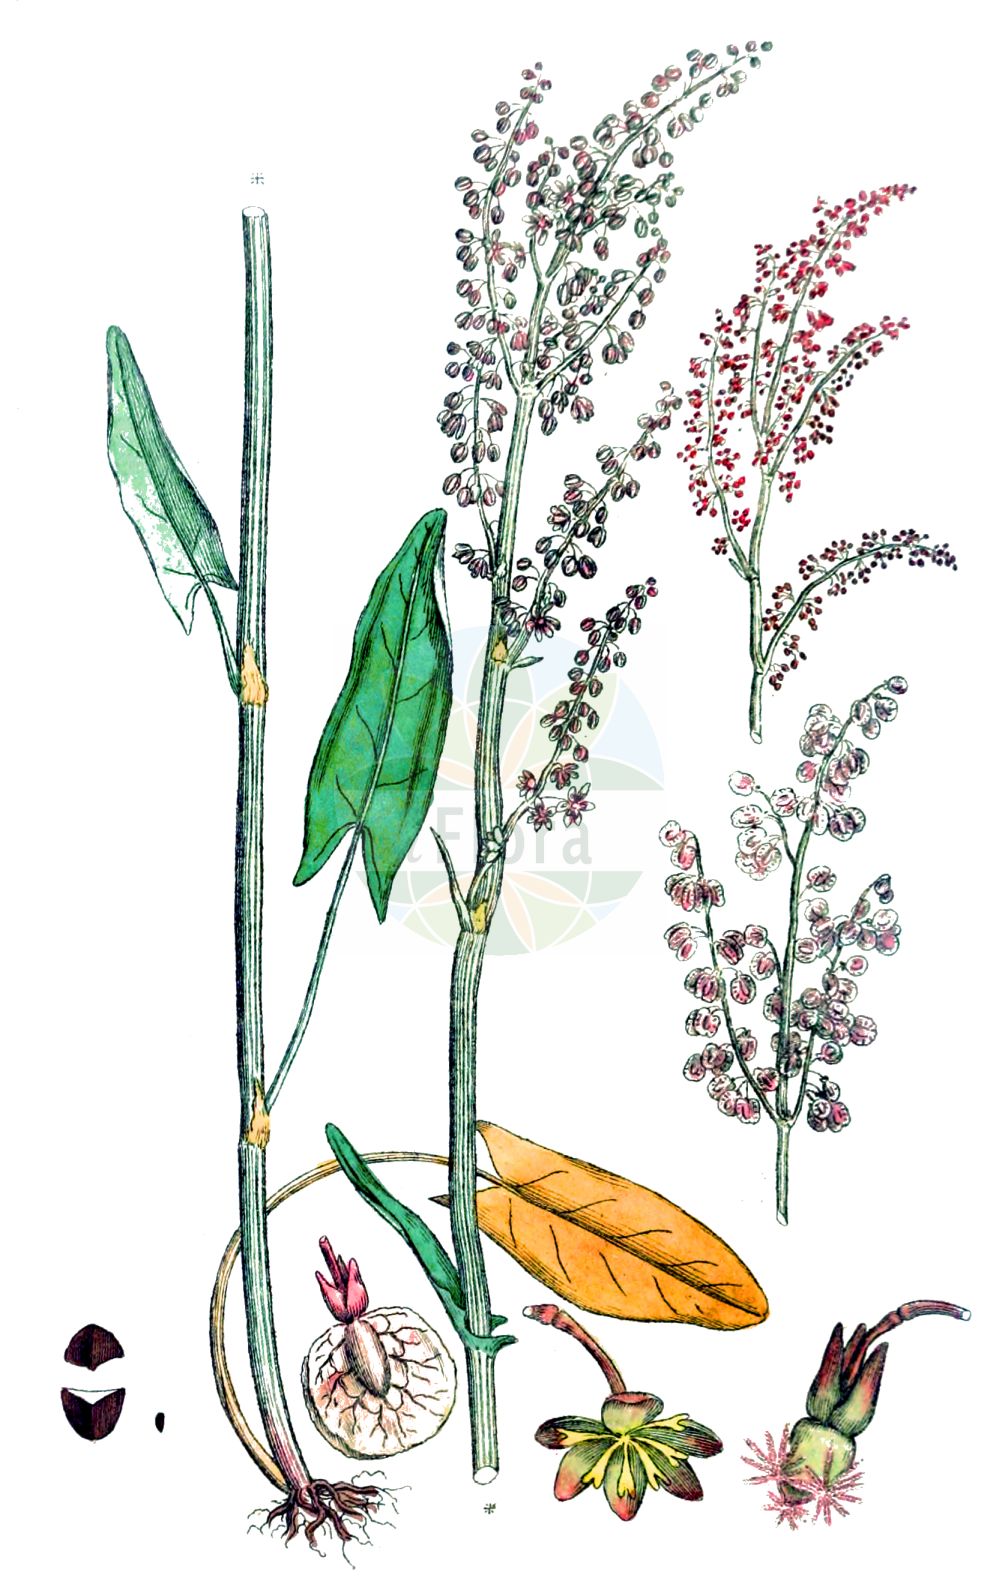 Historische Abbildung von Rumex acetosa (Großer Sauerampfer - Common Sorrel). Das Bild zeigt Blatt, Bluete, Frucht und Same. ---- Historical Drawing of Rumex acetosa (Großer Sauerampfer - Common Sorrel). The image is showing leaf, flower, fruit and seed.(Rumex acetosa,Großer Sauerampfer,Common Sorrel,Acetosa pratensis,Rumex acetosa,Rumex acetosa subsp. planellae,Grosser Sauerampfer,Gewoehnlicher Sauerampfer,Wiesen-Sauerampfer,Common Sorrel,Garden Sorrel,Green Sorrel,Sheep's Sorrel,Meadow Sorrel,Sour Dock,Rumex,Ampfer,Sorrel,Polygonaceae,Knöterichgewächse,Knotgrass family,Blatt,Bluete,Frucht,Same,leaf,flower,fruit,seed,Svensk Botanik (Svensk Botanik))